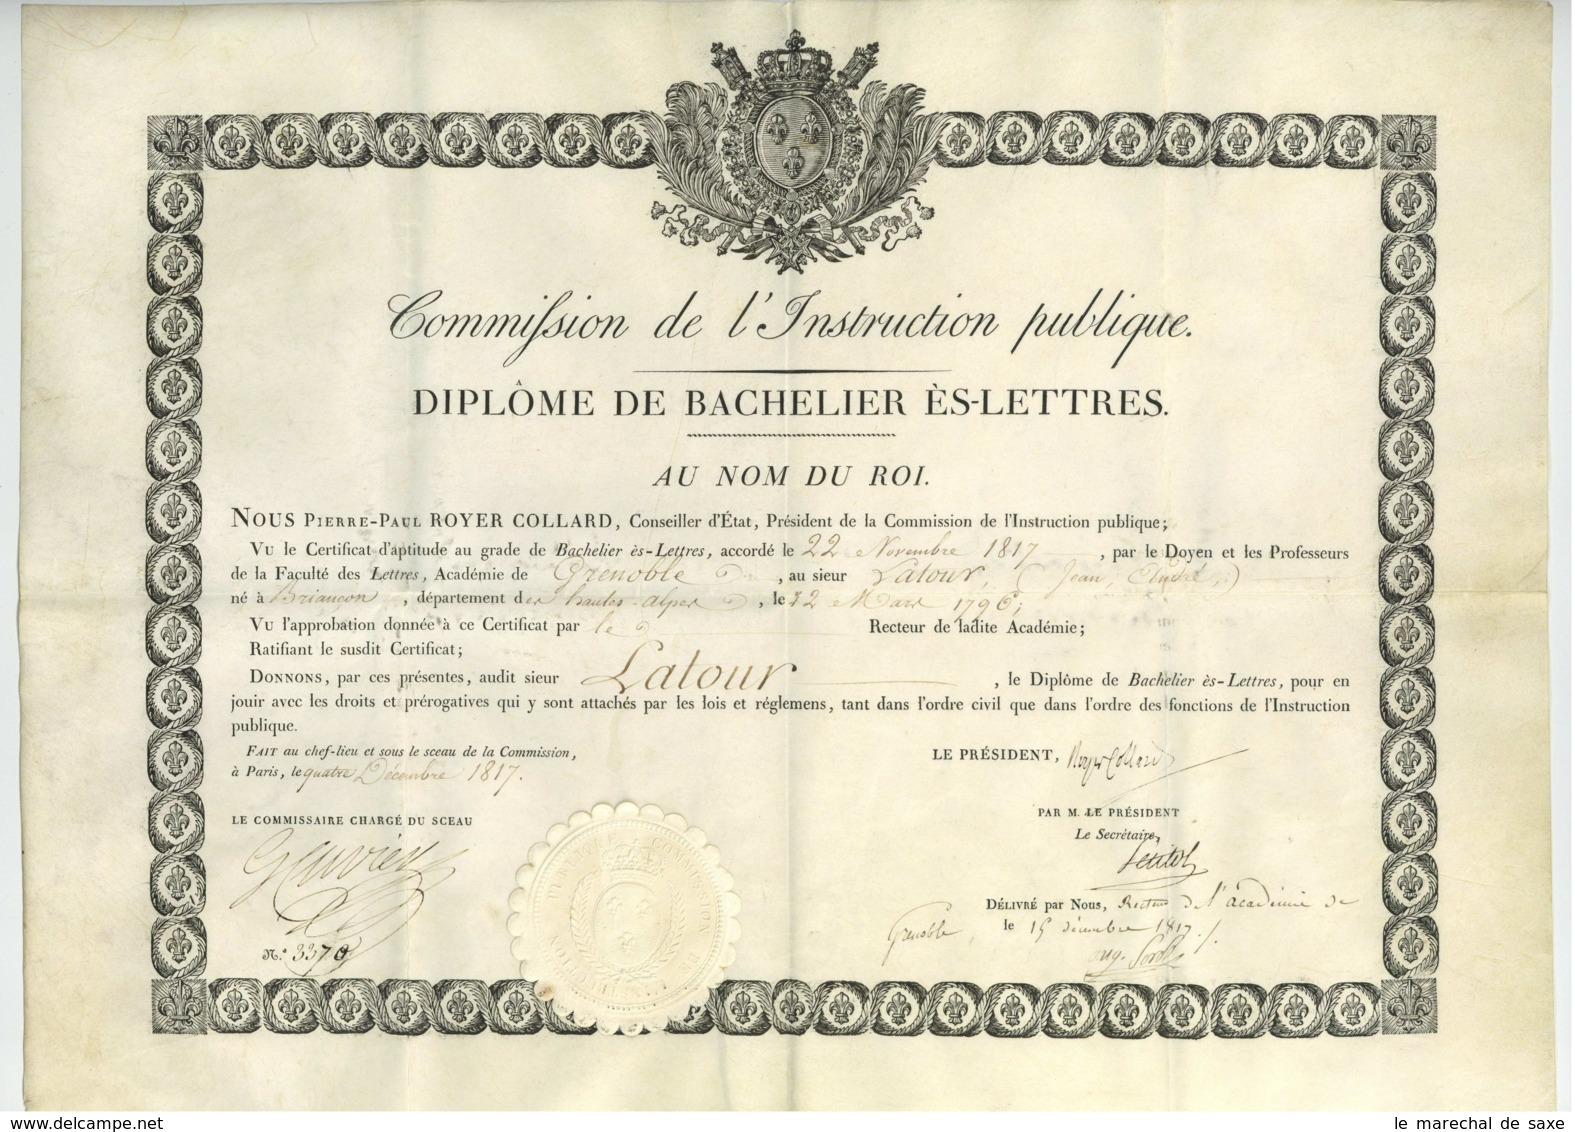 Diplome De Bachelier Es Lettres 1817 Georges CUVIER Royer-Collard Petitot Briancon Latour Grenoble - Diplomas Y Calificaciones Escolares